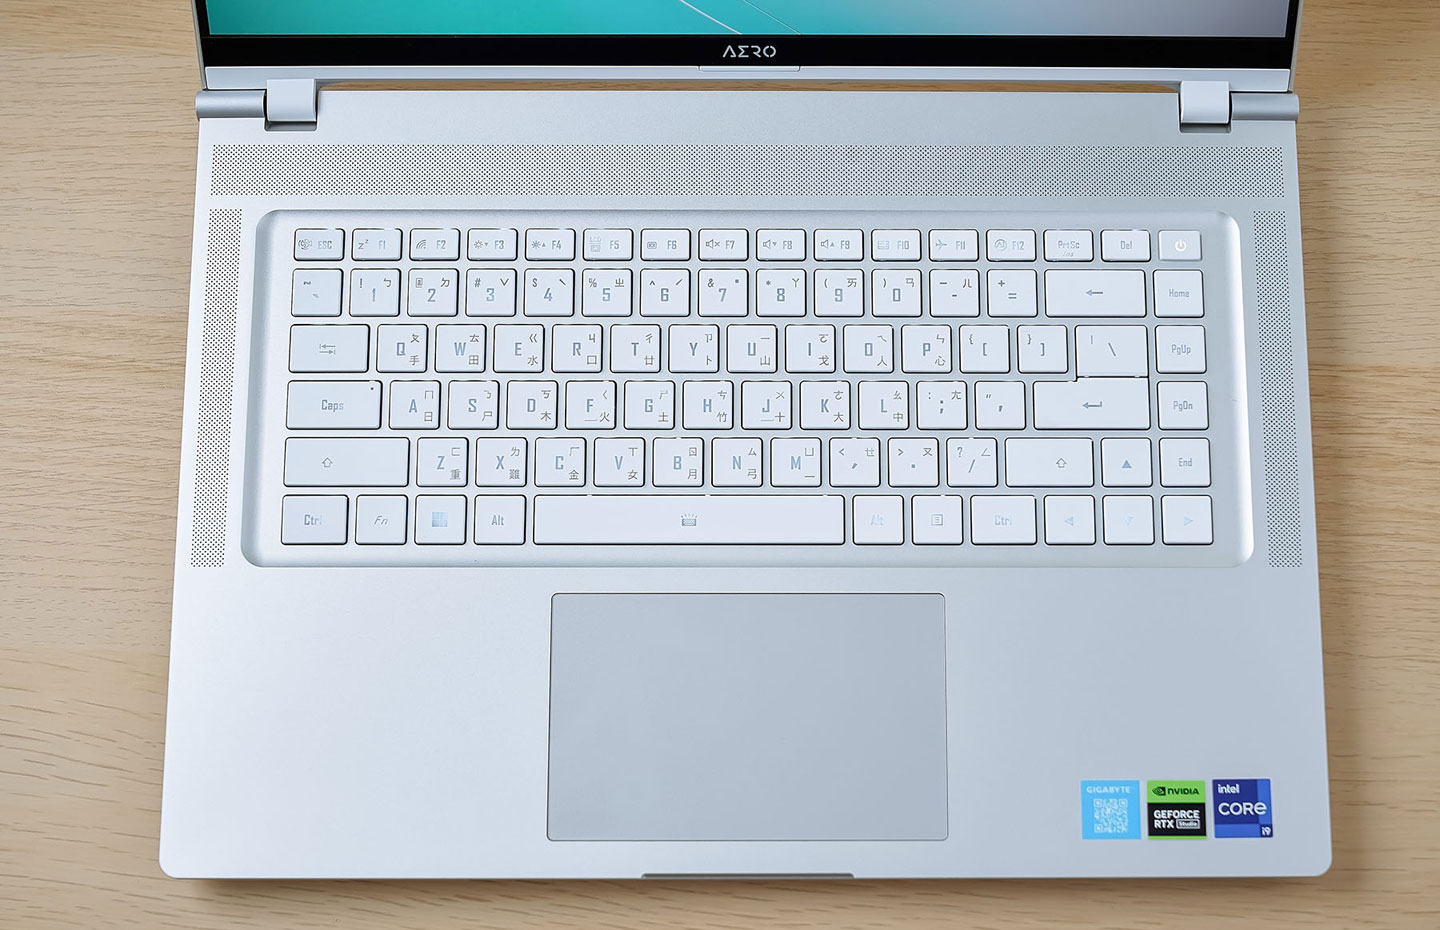 機身內側的 C 面也同樣為銀白色系，並配了鍵距合宜的島式鍵盤，白色鍵帽在視覺上也能與金屬機身的銀色完全契合。 ▲ 在鍵盤上方靠近螢幕 AERO LOGO 處有一個隱藏於網區塊的光源感測器，可以偵測環境亮度自動調校螢幕的顯示定。 ▲ AERO 16 OLED 的鍵盤擁有 1.7 mm 的長鍵程，打時的回饋感合宜，使用起來非常舒適。